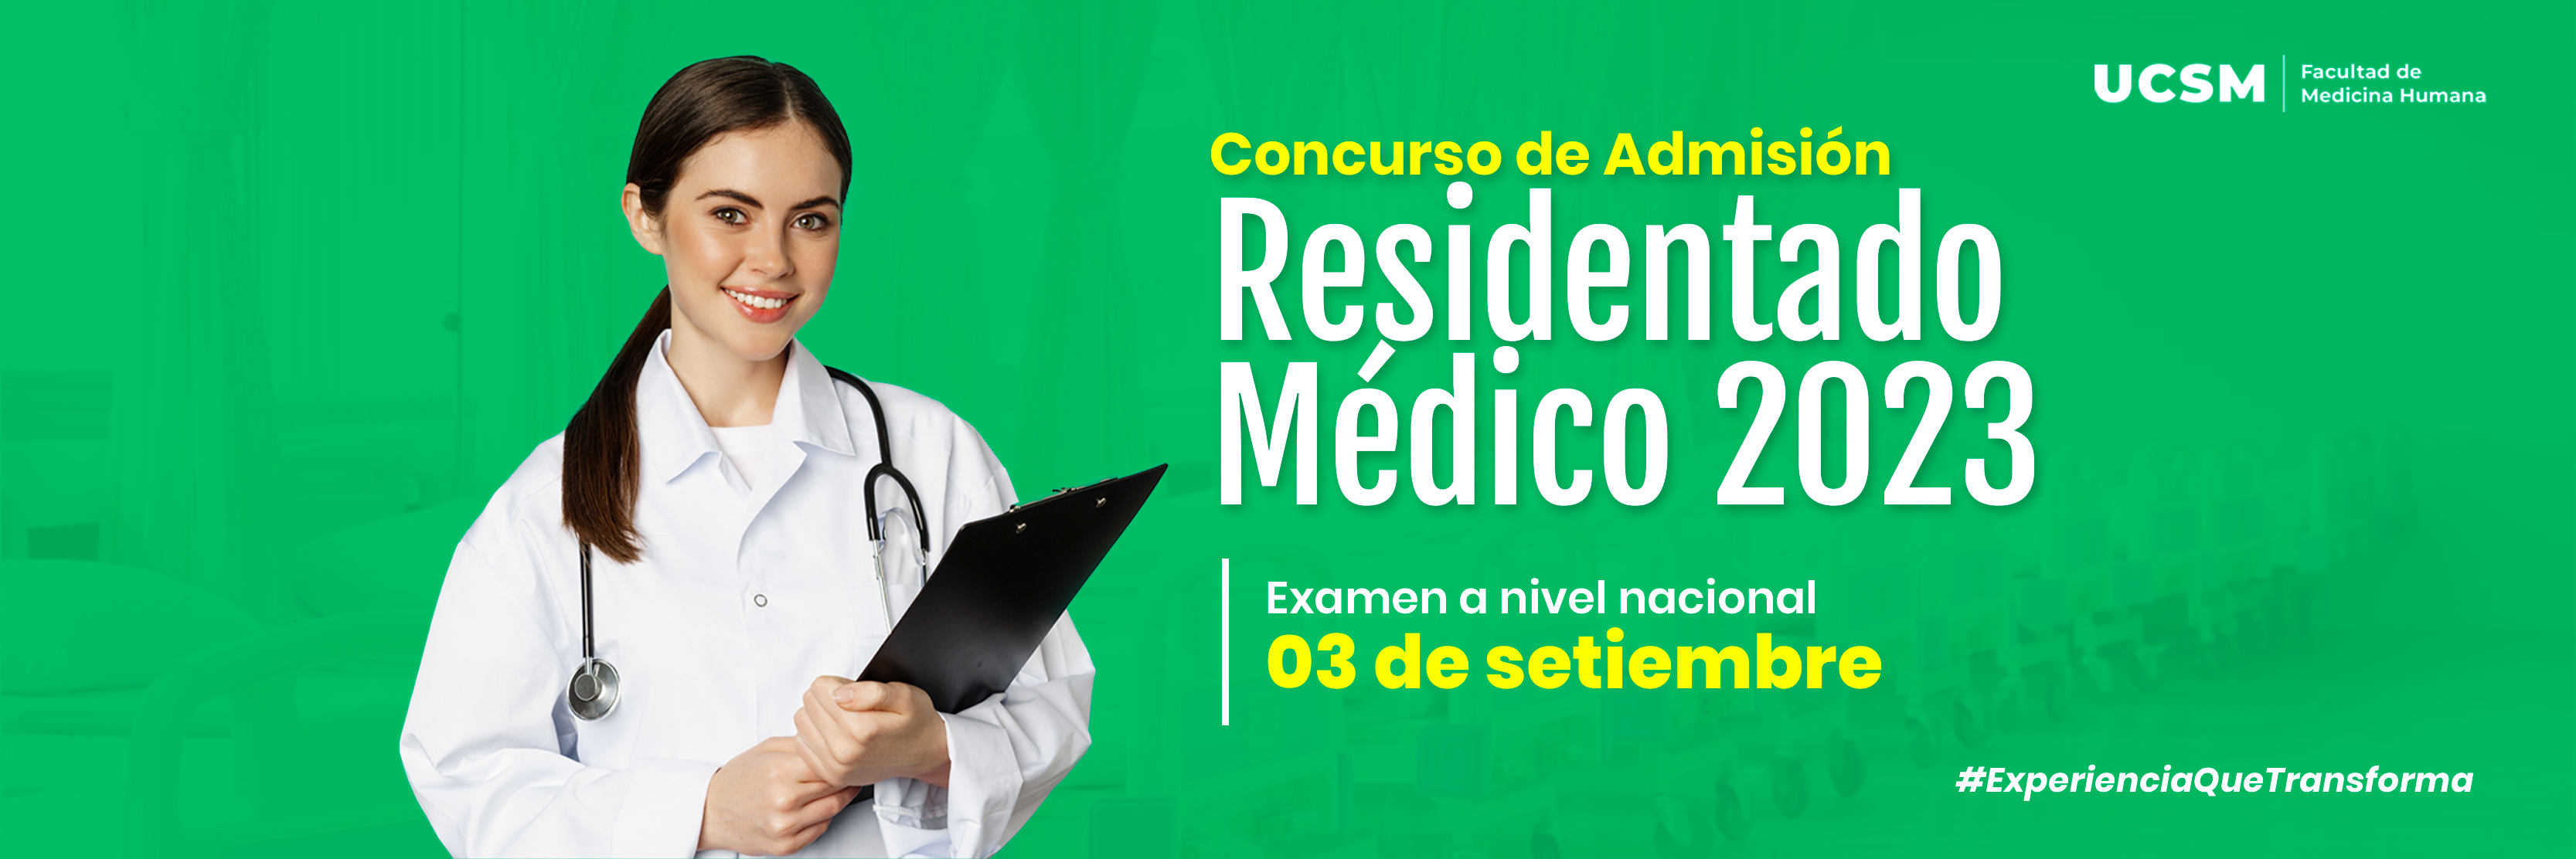 ucsm-Portada-Residentado-Medico-2023